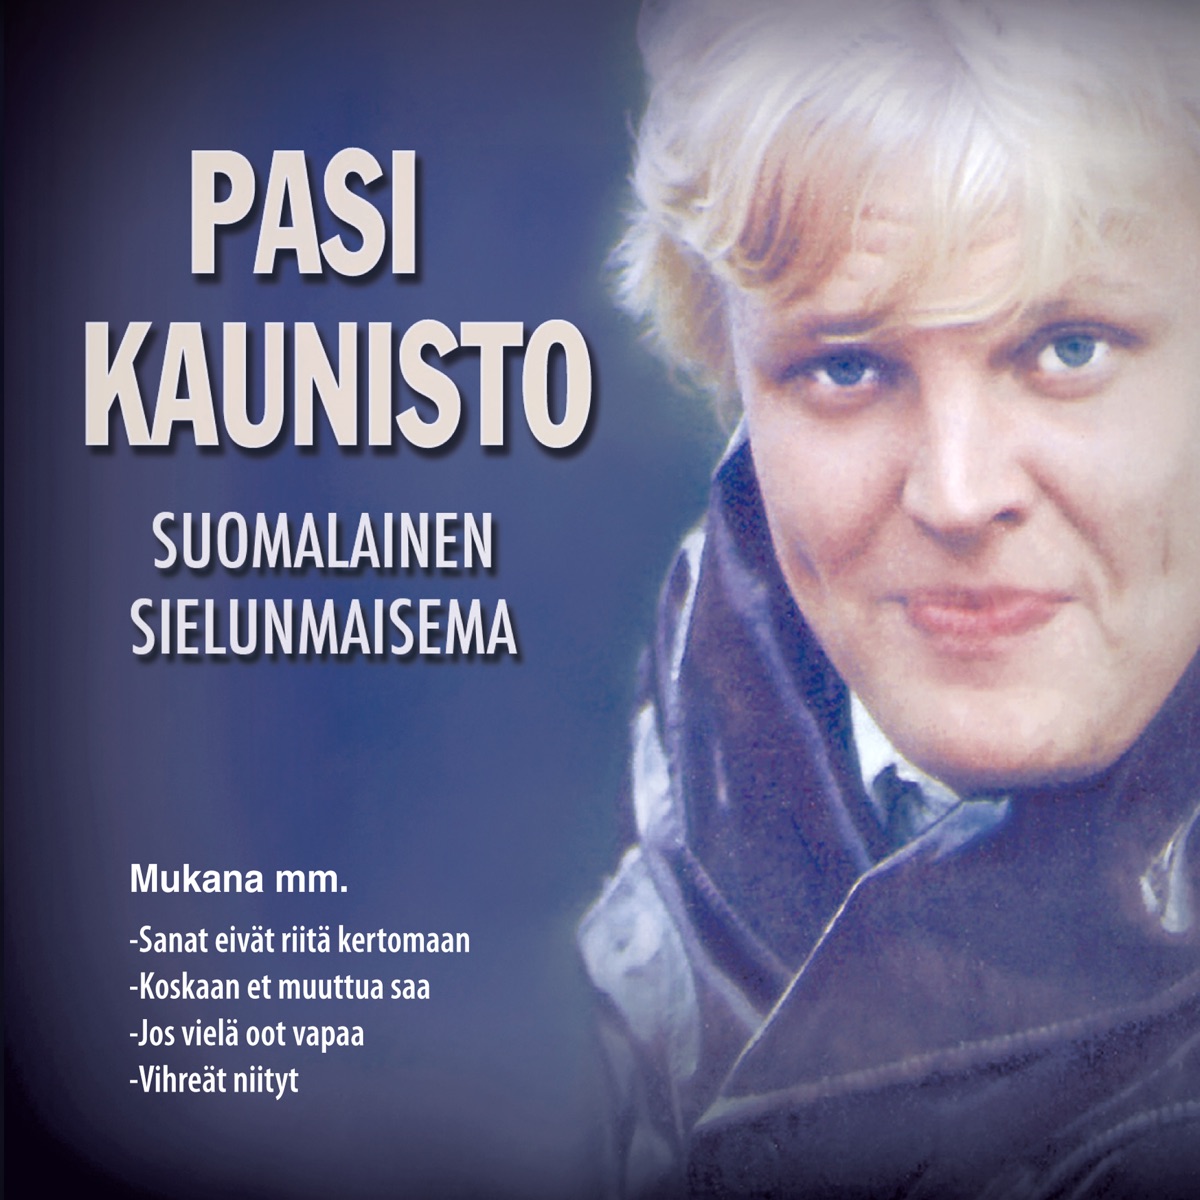 Iltatähti by Pasi Kaunisto on Apple Music